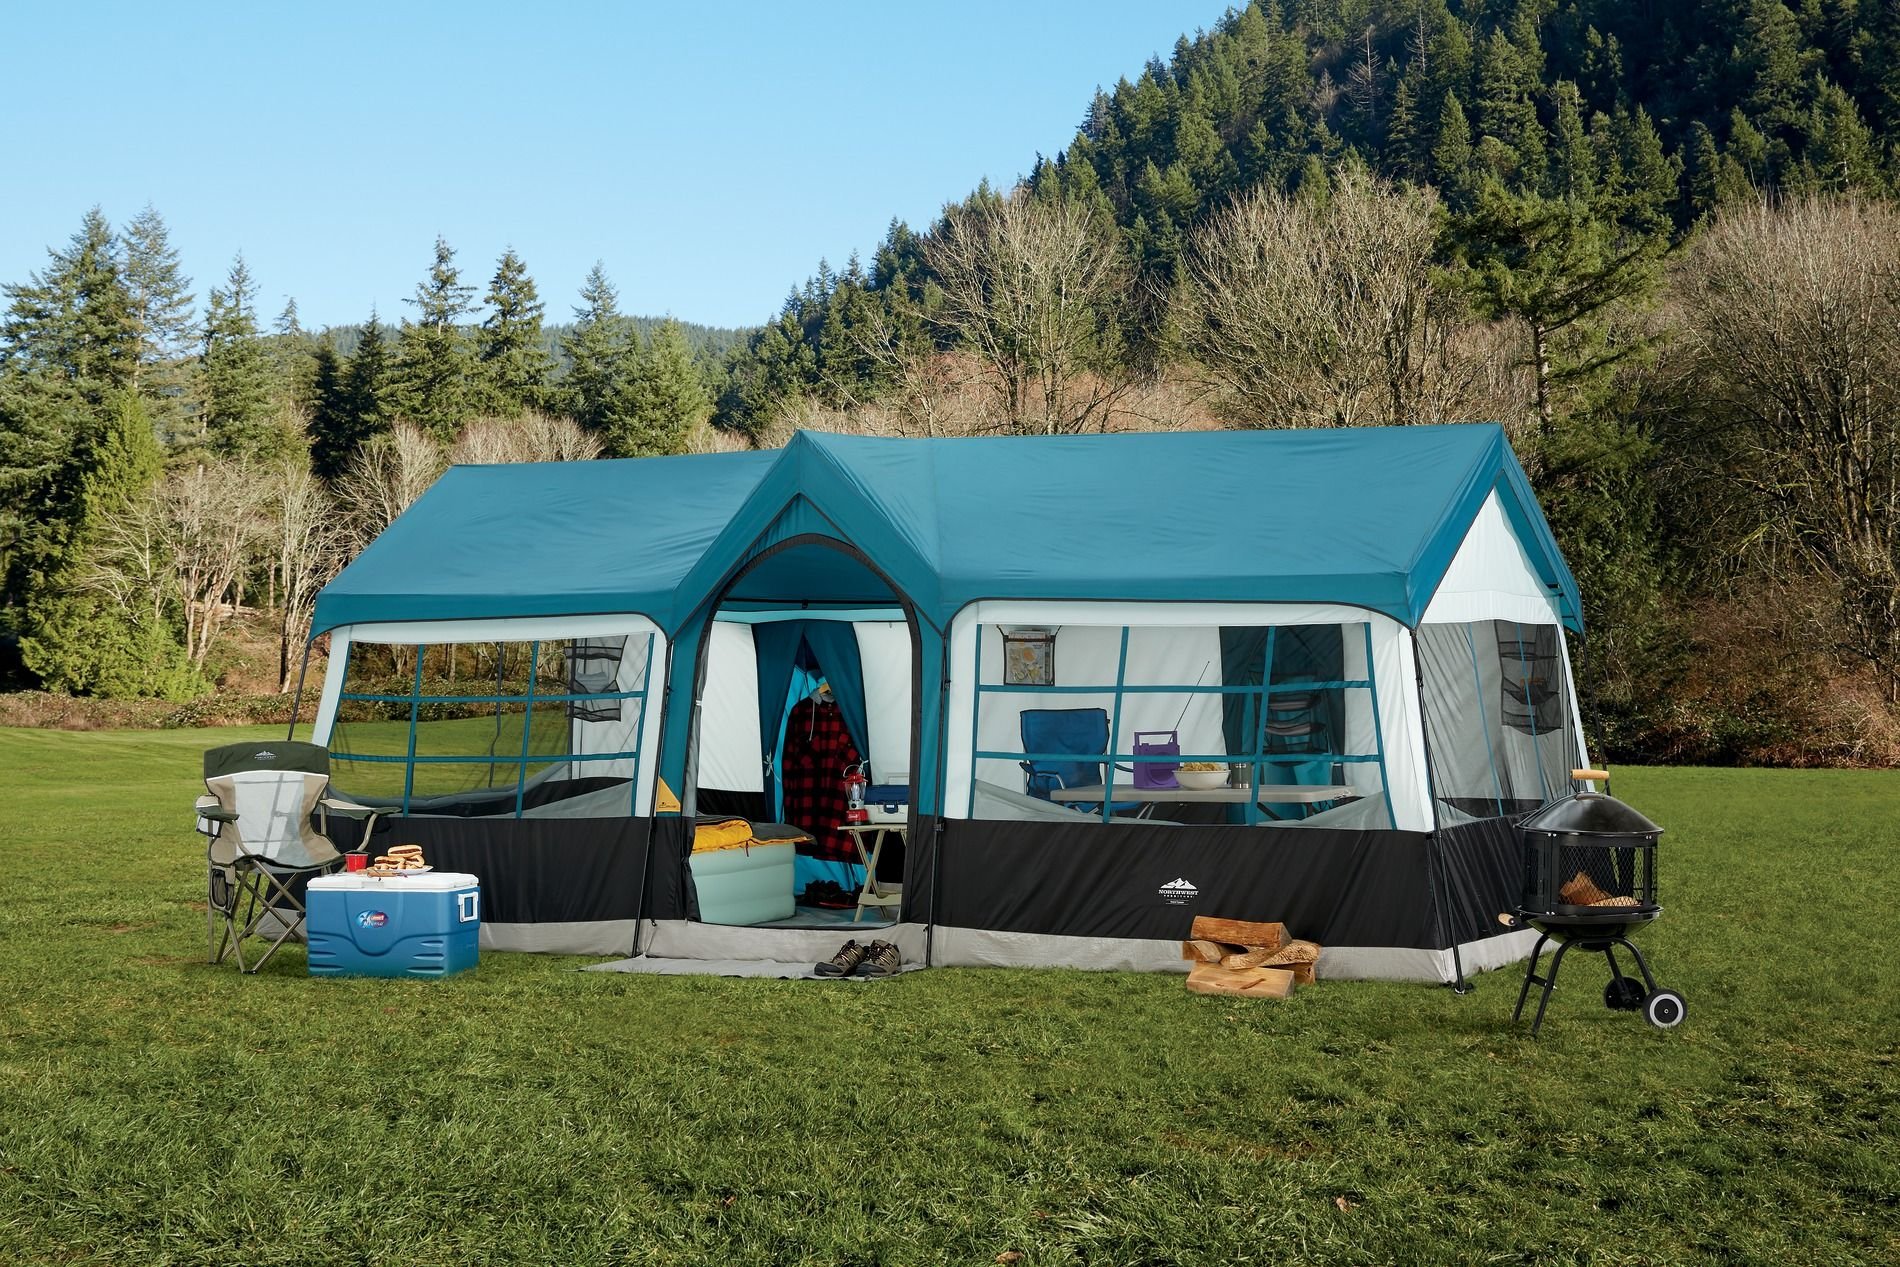 Кемпинг размещение. Палатка кемпинг домик зеленый xyp602. Лагерь модульный (шатер и 2 палатки) Nash Base Camp. Палатка papallona Delta Cabin PP-206. Палатка Grand Canyon Family Adventure Camping.